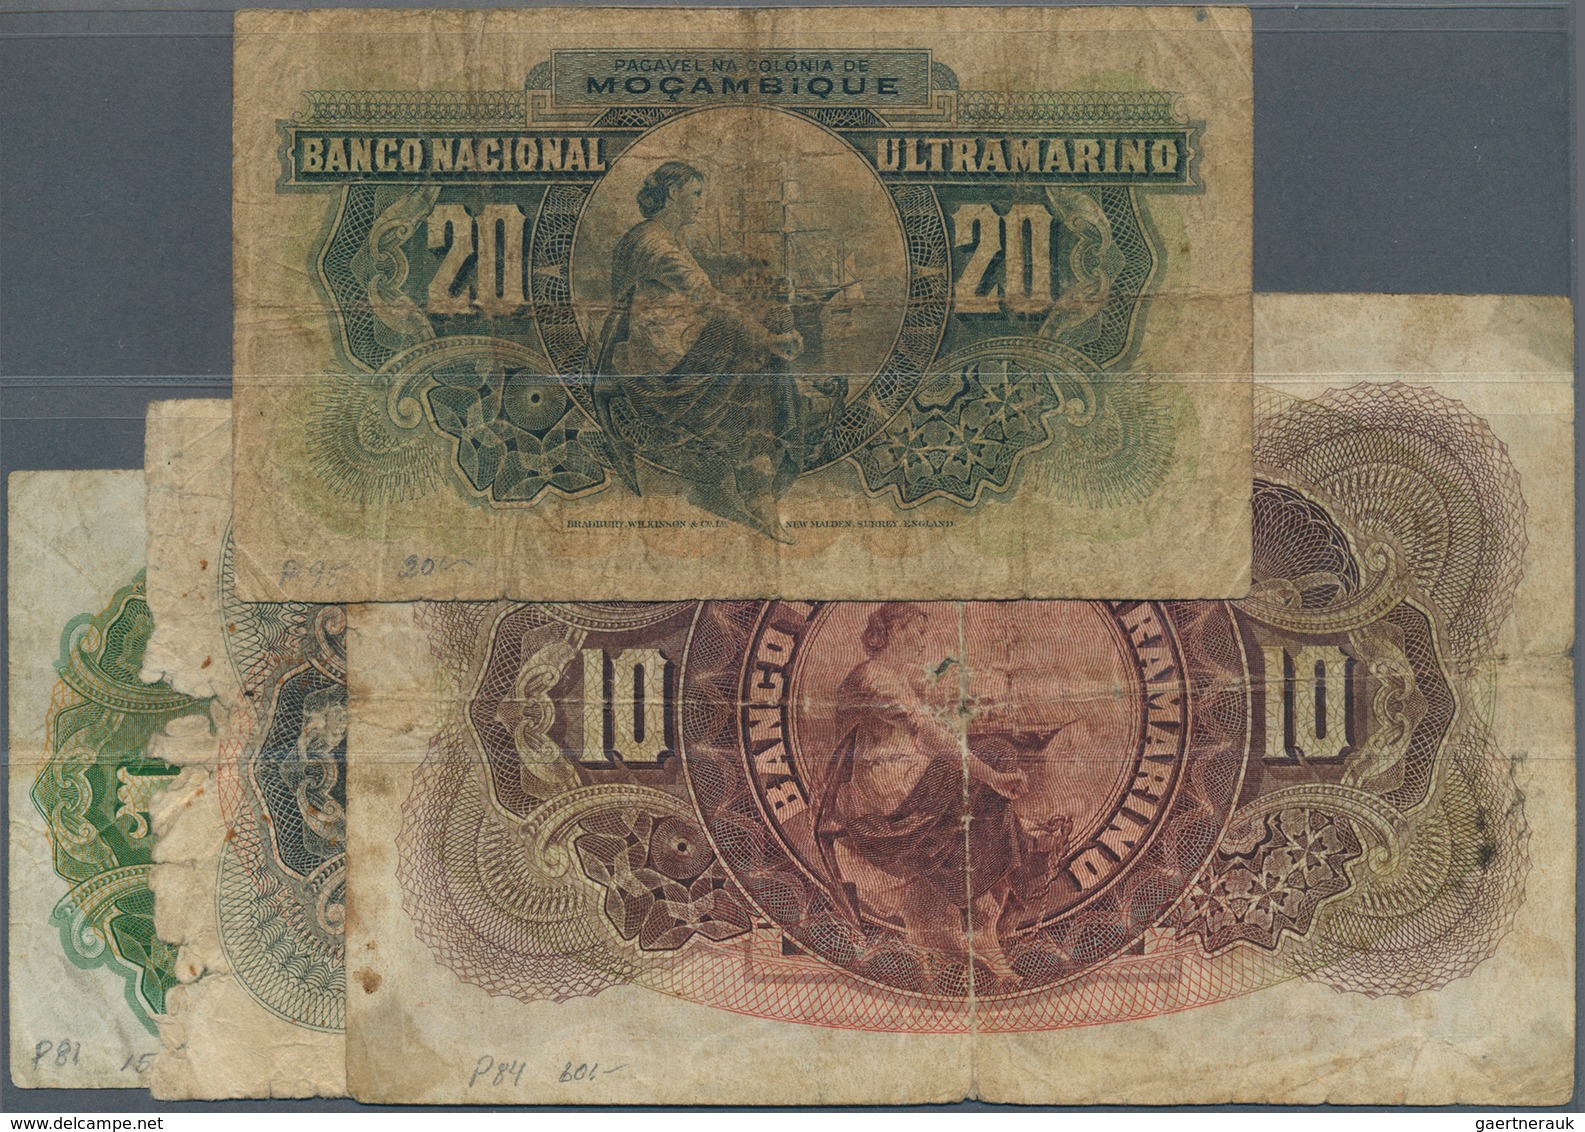 02044 Mozambique: Set Of 4 Banknotes 20 Escudos 1945 P. 96 (VG), 1 Escudo 1941 P. 81 (F-), 5 Escudos 1941 - Mozambique